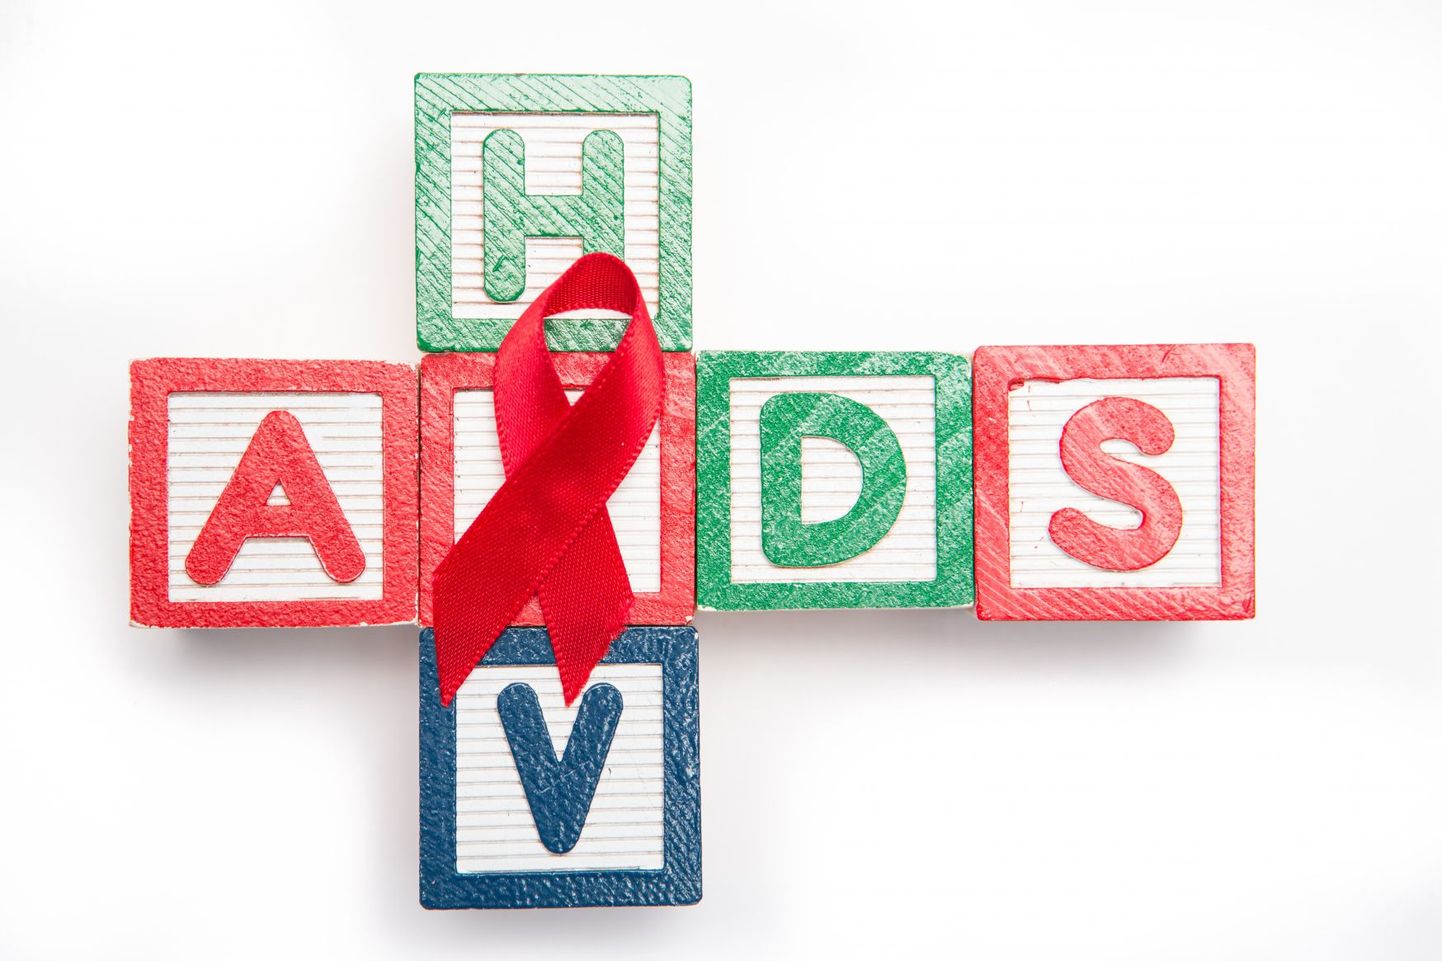 Võrreldes eelmise aastaga on aidsi haigestumine kasvanud enam kui poole võrra.